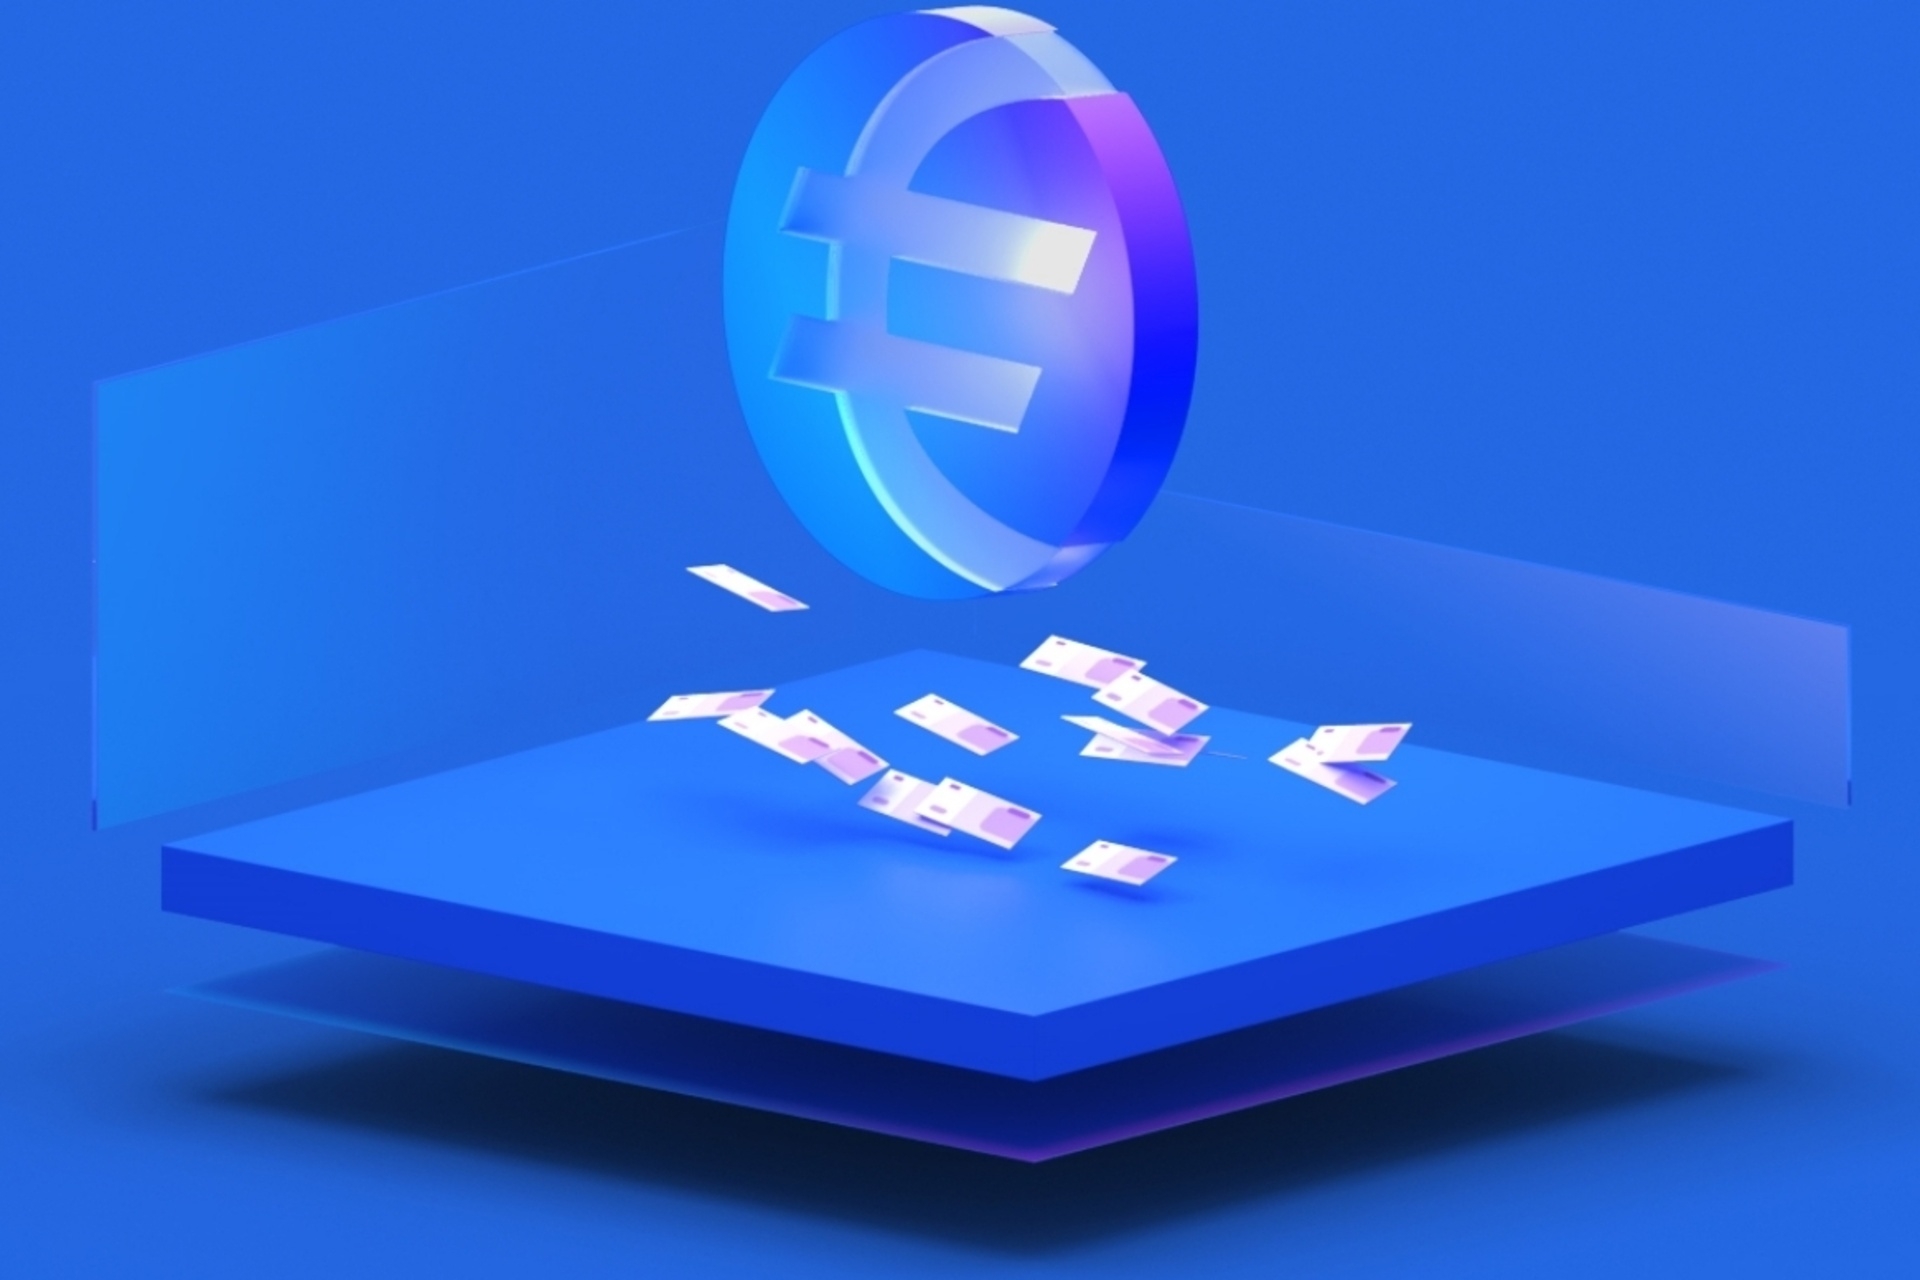 Stasis: EURS je stabilna kovanica bazirana na evru koja je lansirana 2018